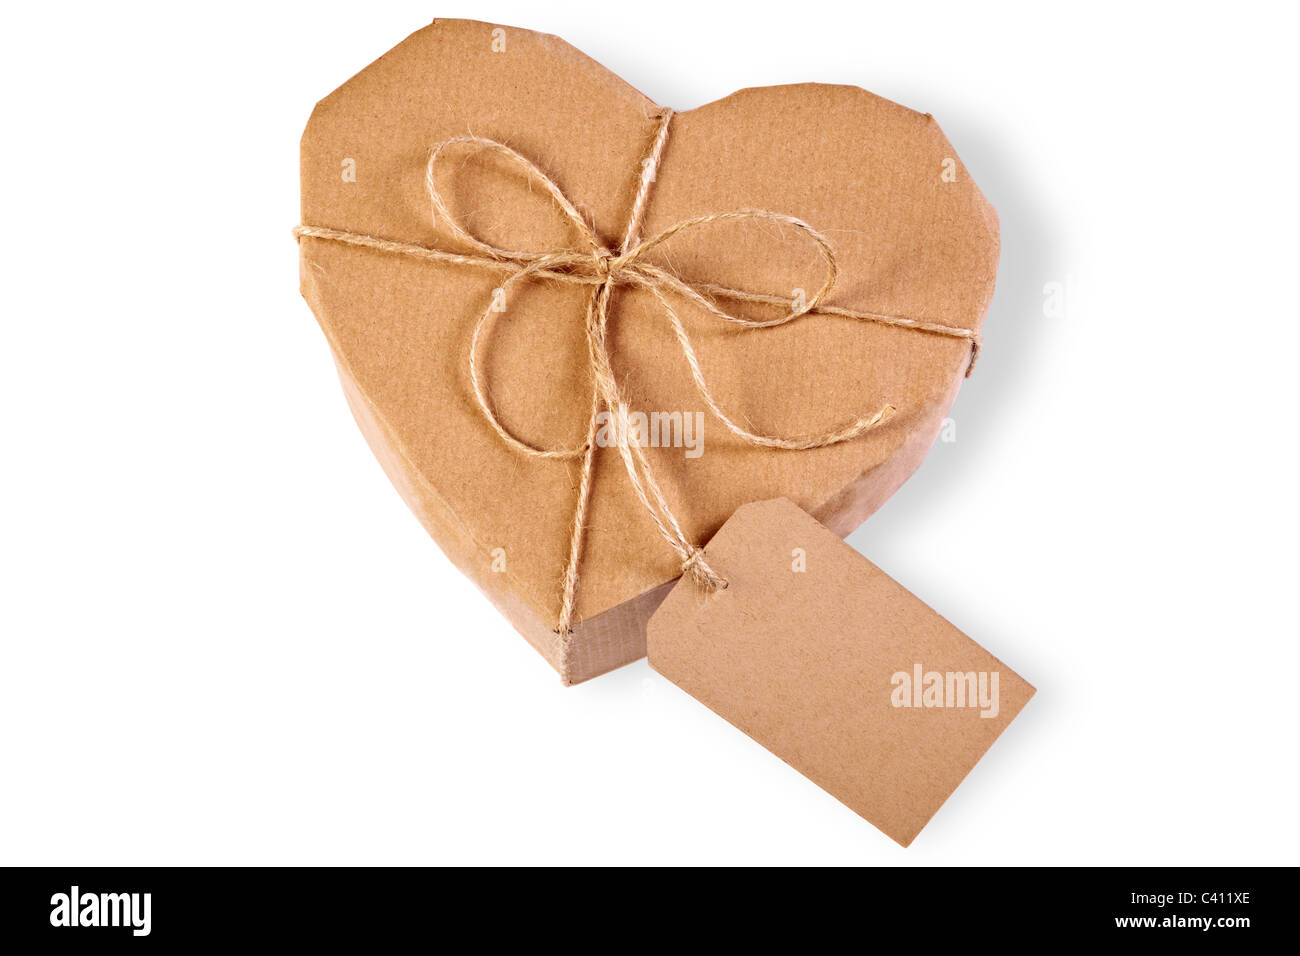 Foto di un cuore confezione regalo avvolto in carta marrone con etichetta, isolato su uno sfondo bianco. Foto Stock